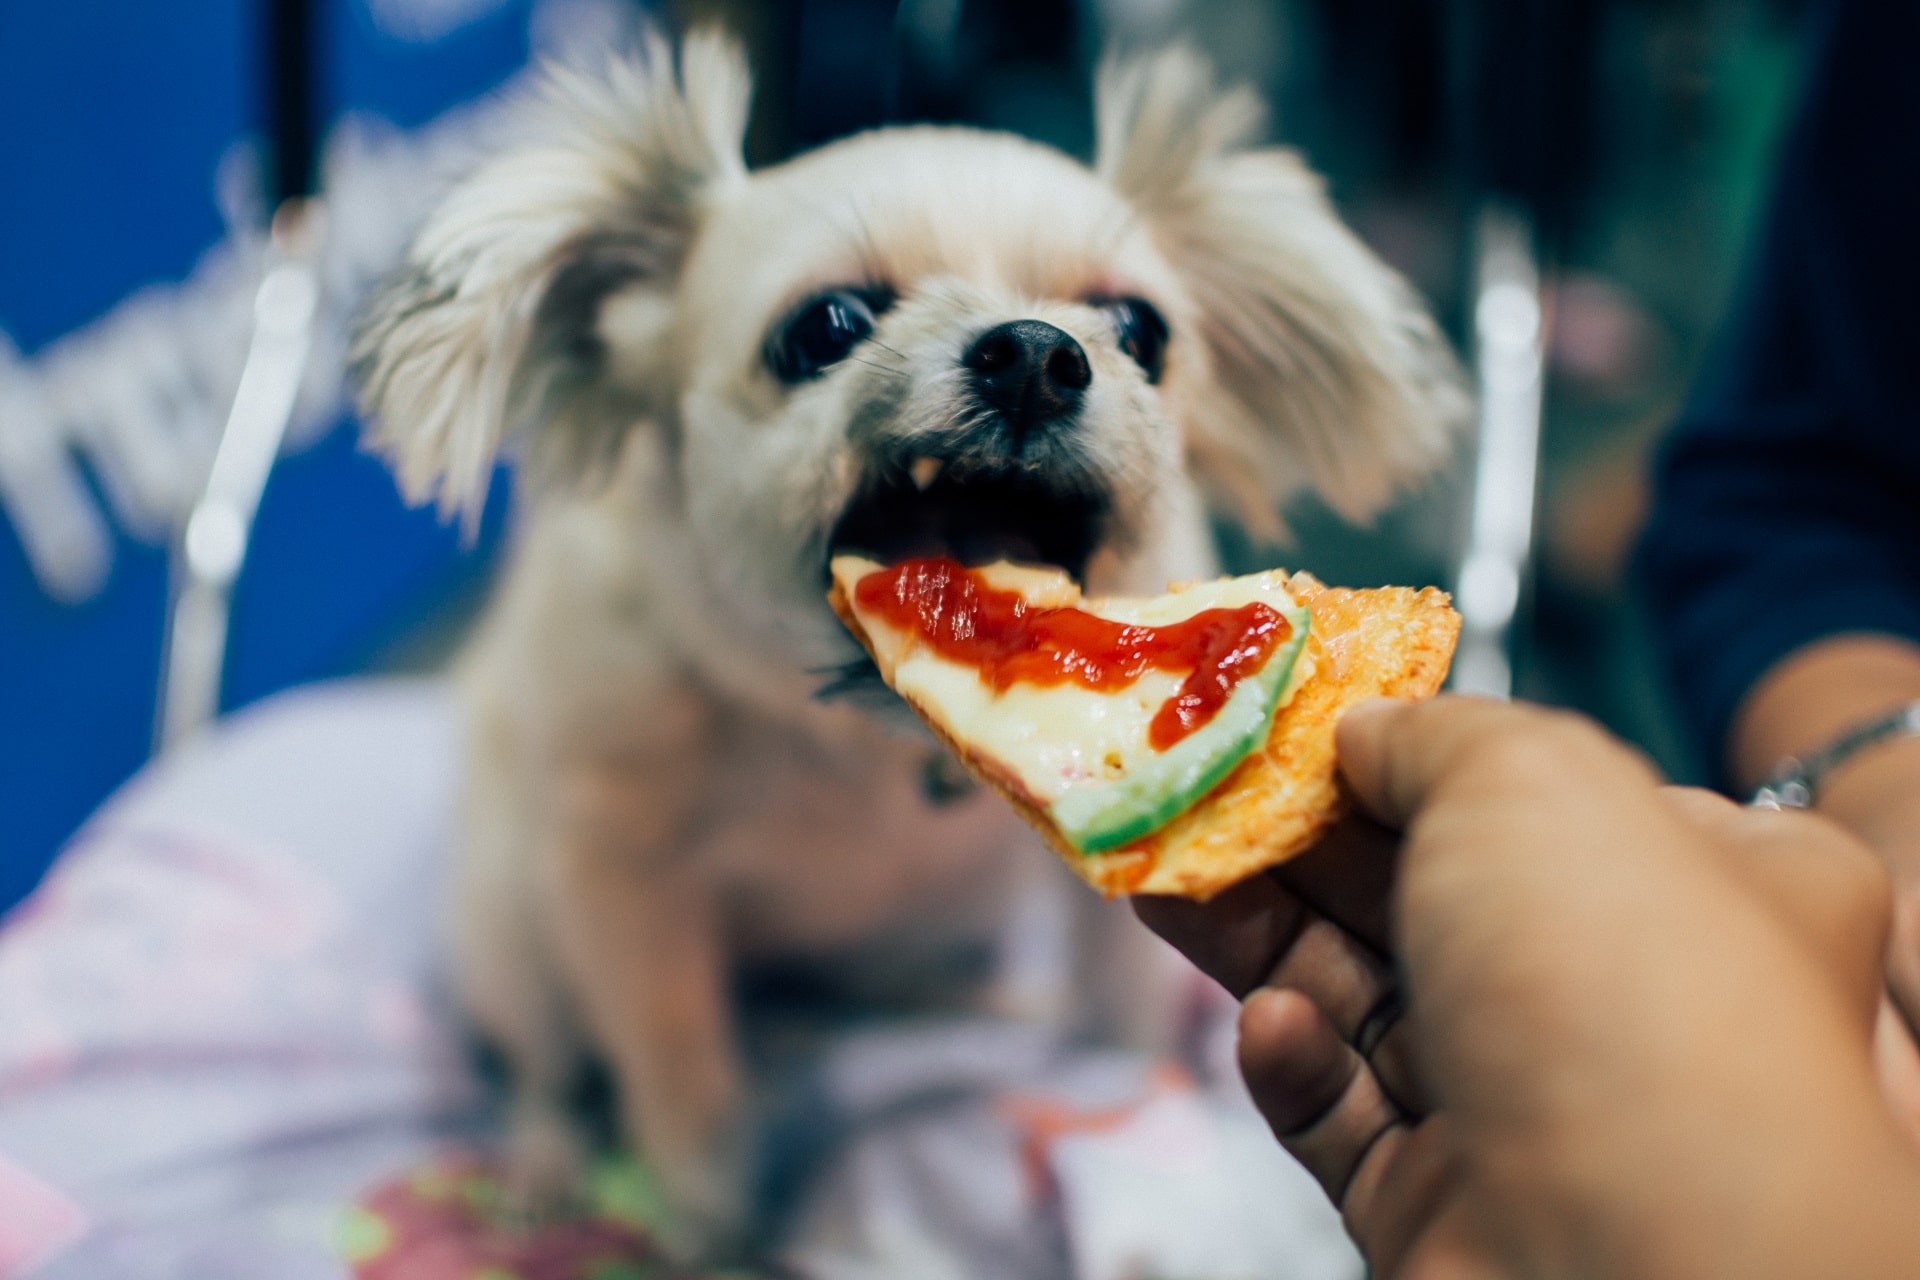 dlaczego pies nie chce jeść